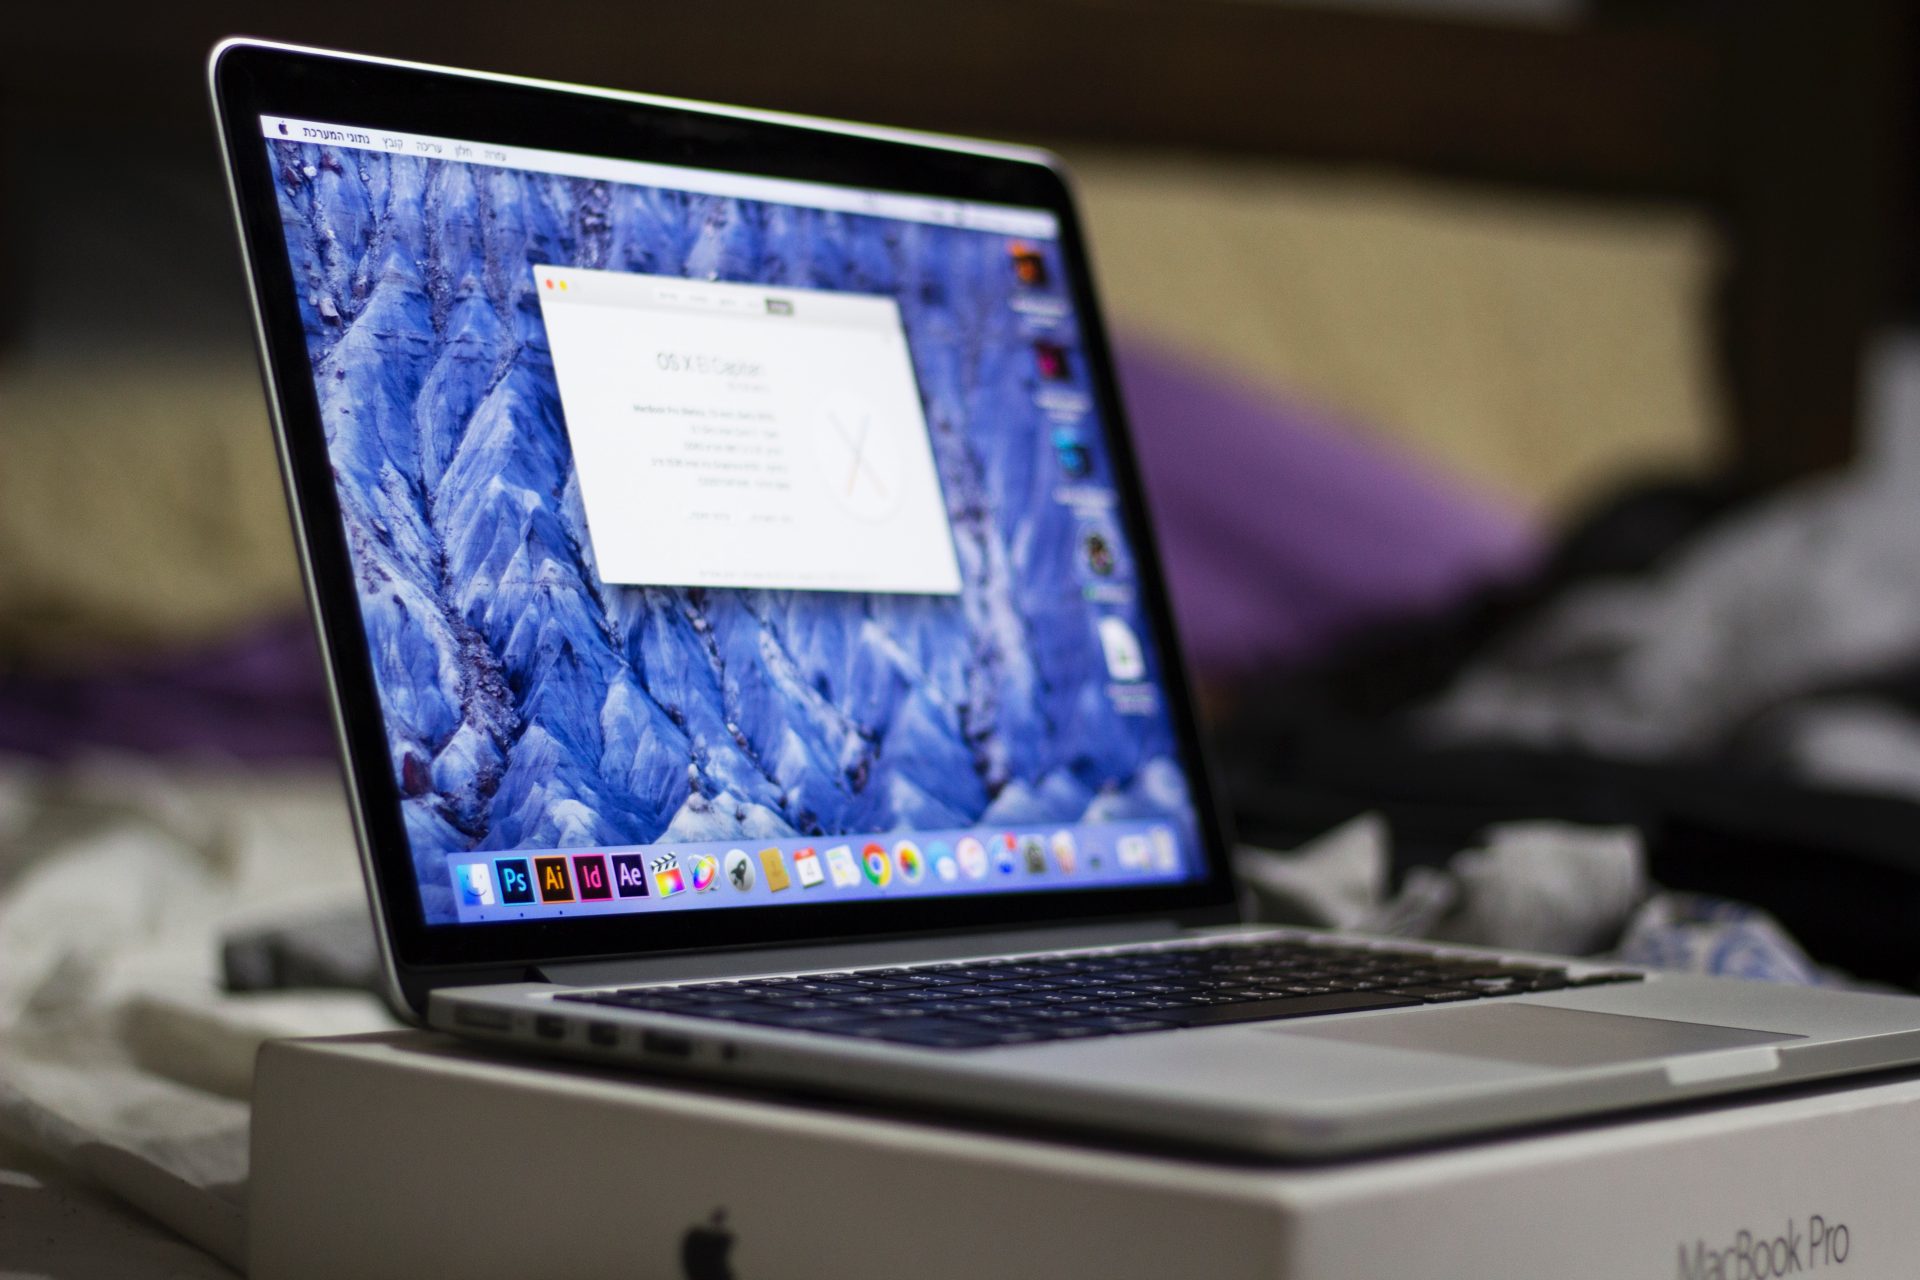 MacBook showing pop up window on screen